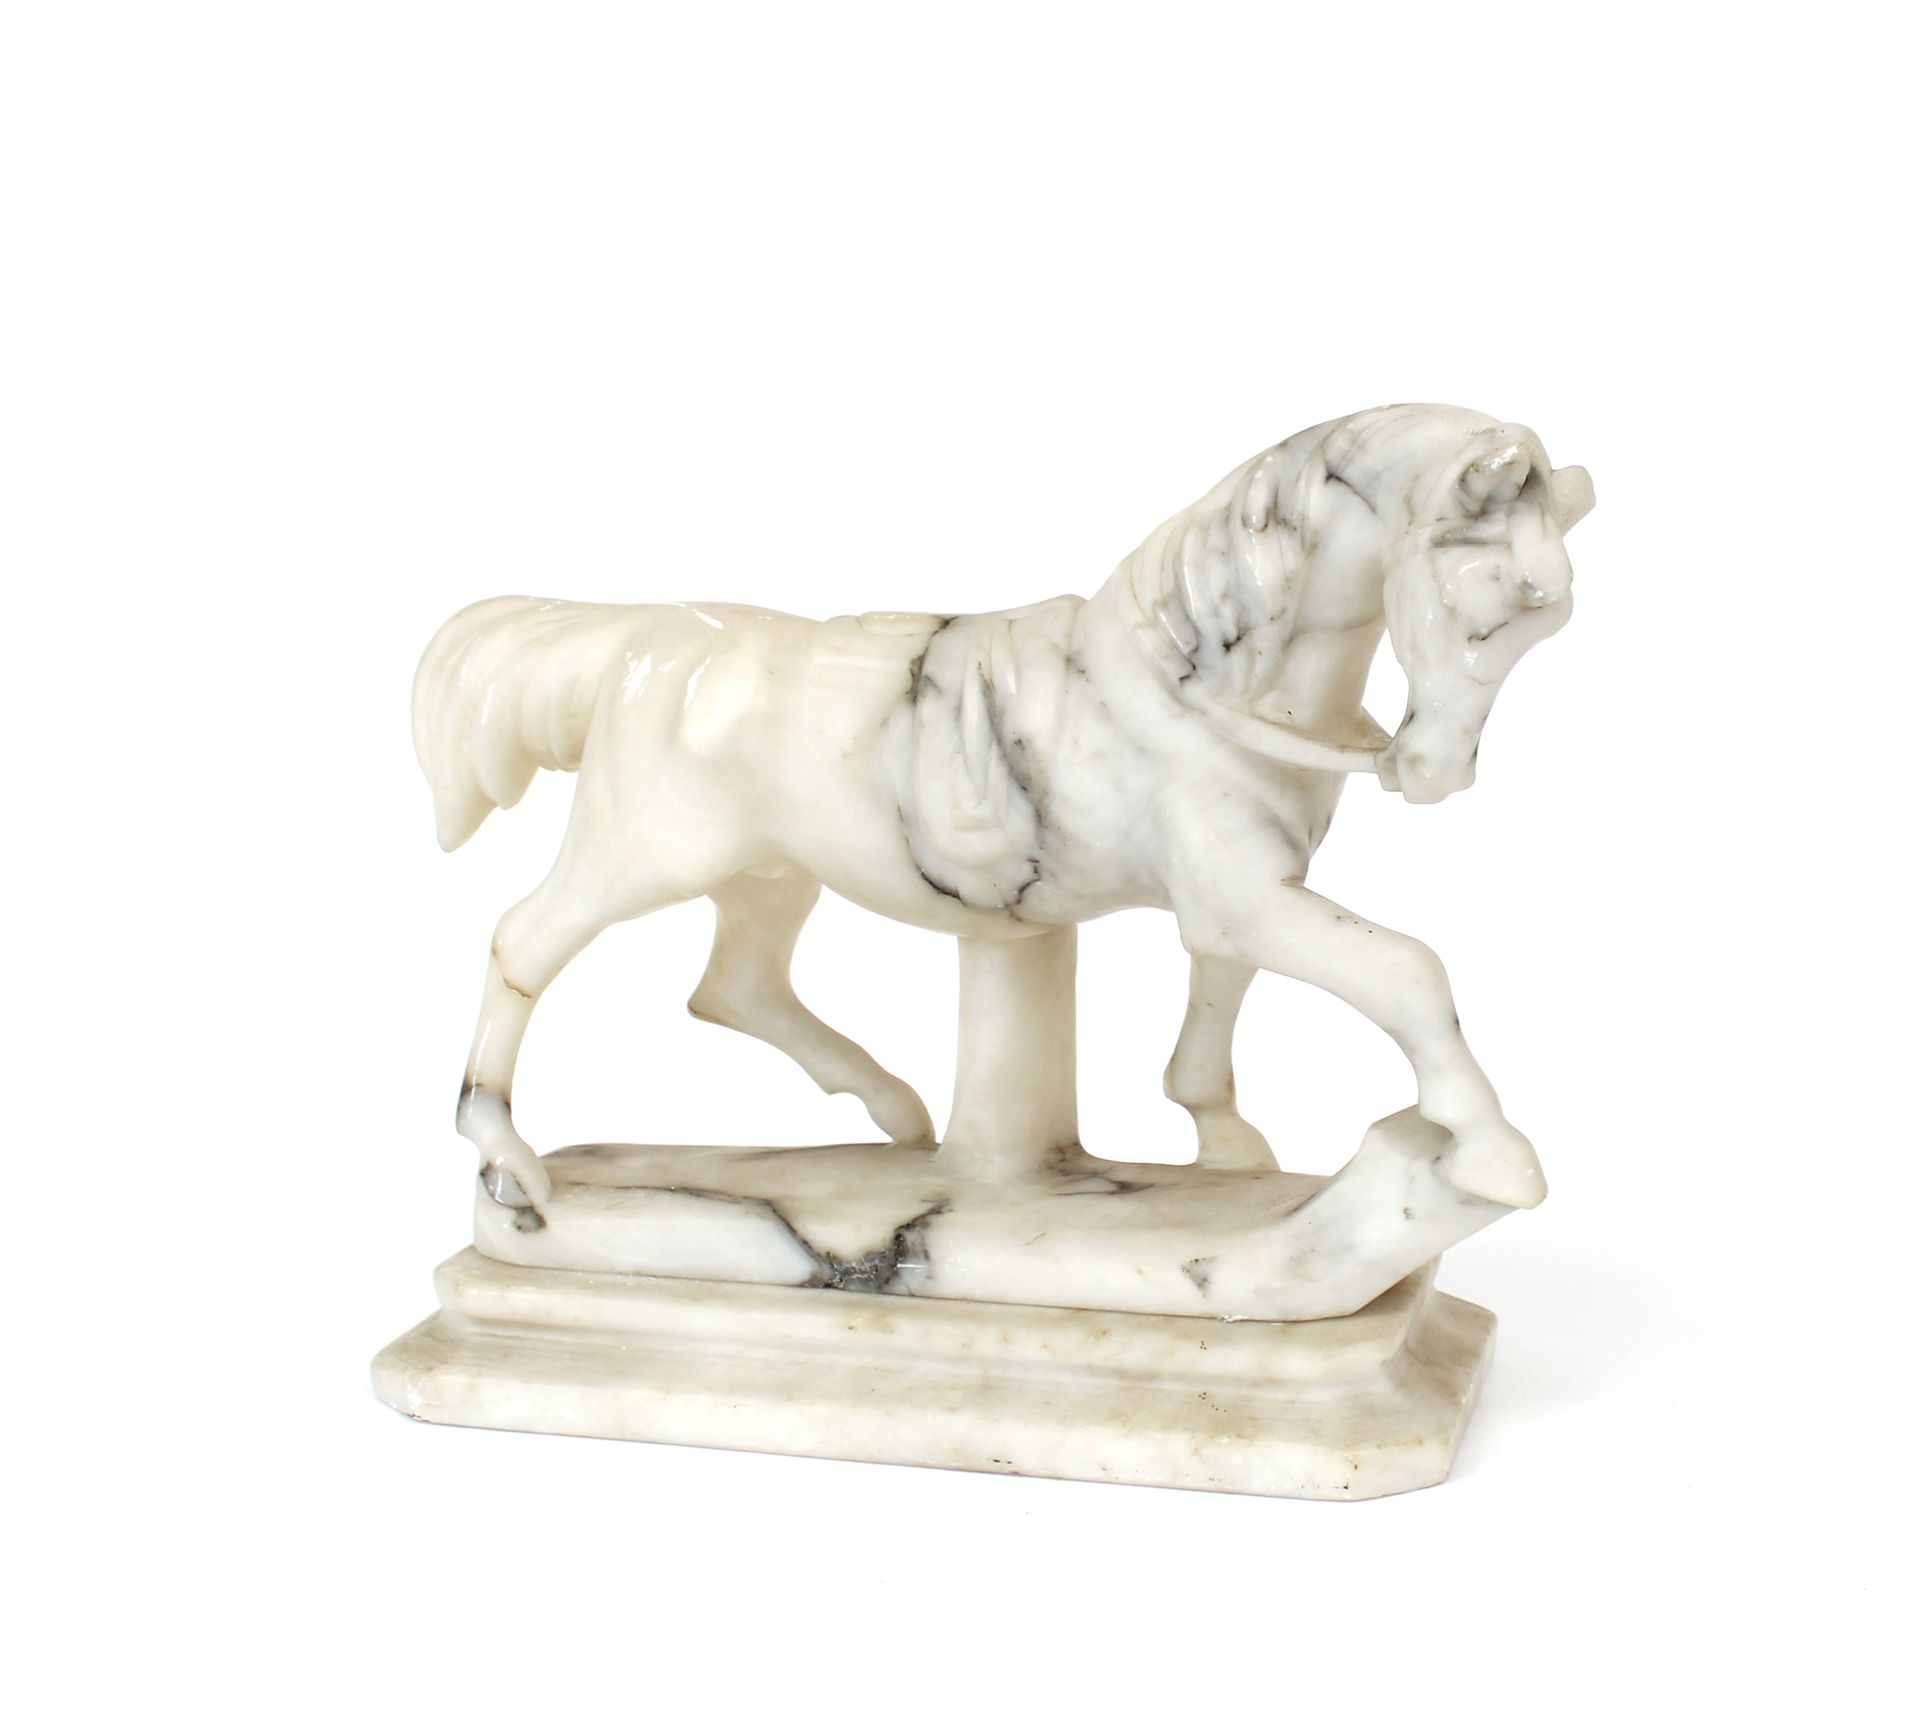 Null Cavallo in marmo scolpito
L. 26 x L. 10,5 x H. 21,5 cm
Graffi